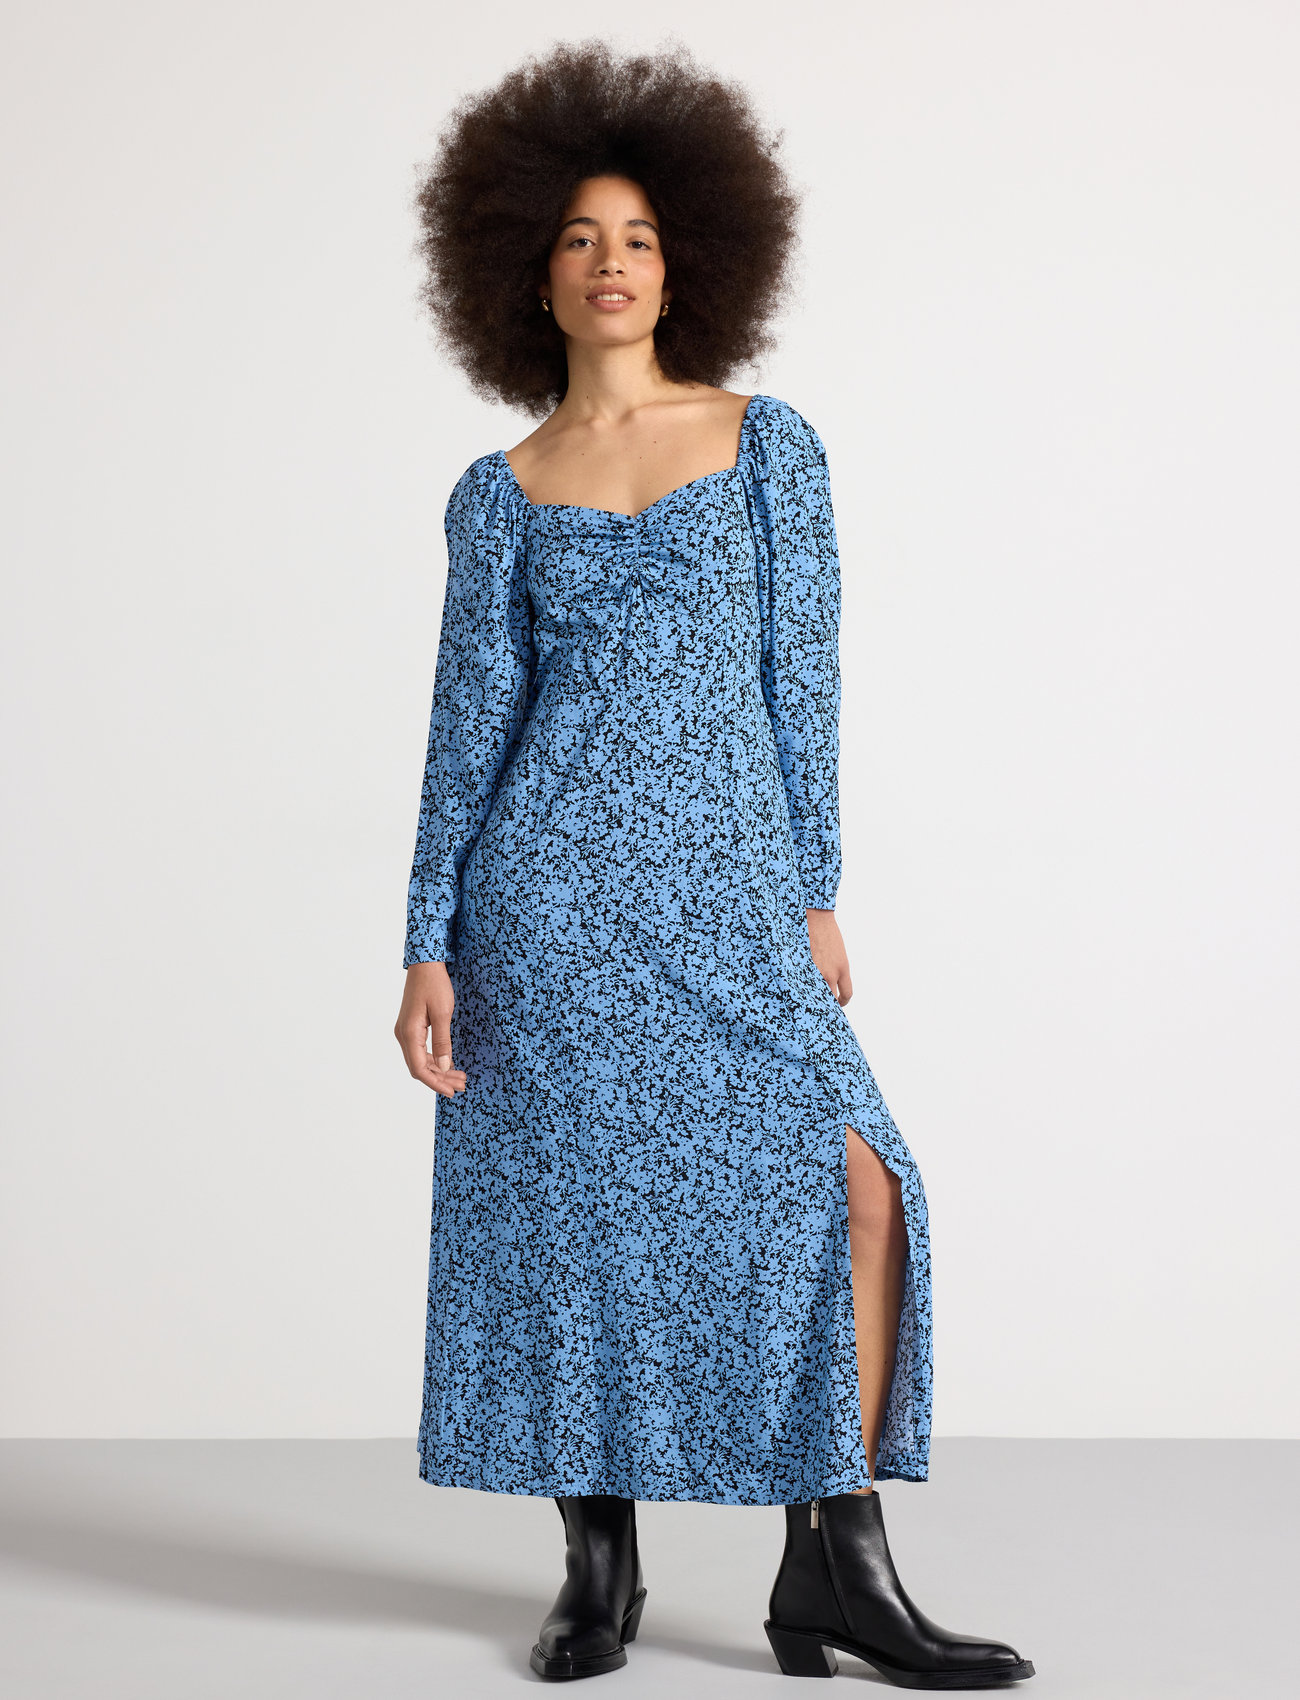 Lindex - Dress Rosie - najniższe ceny - light dusty blue - 1